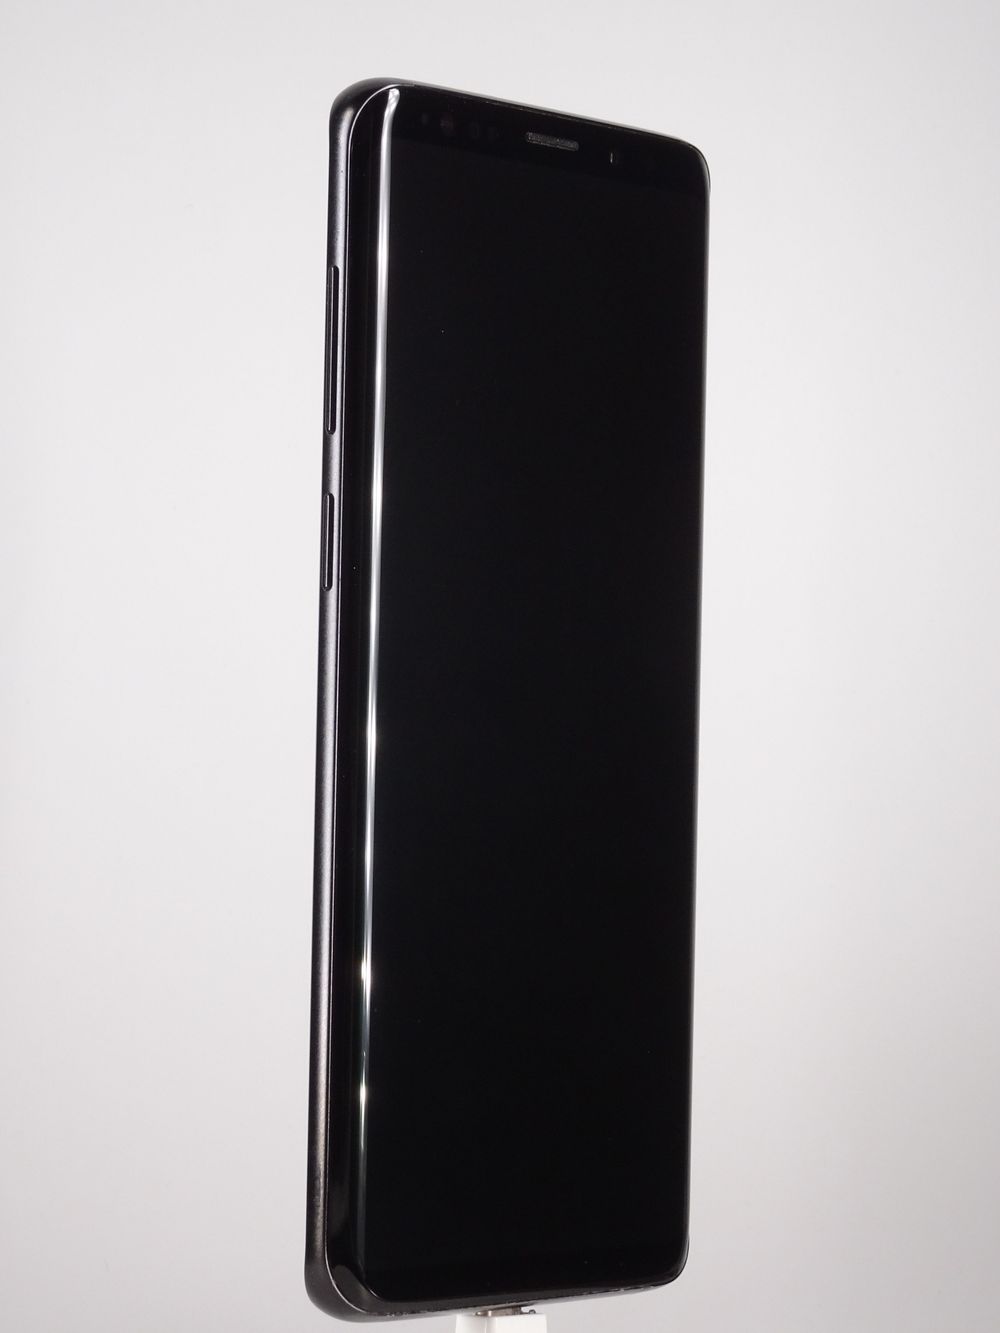 Telefon mobil Samsung Galaxy S9 Plus Dual Sim, Black, 128 GB,  Excelent